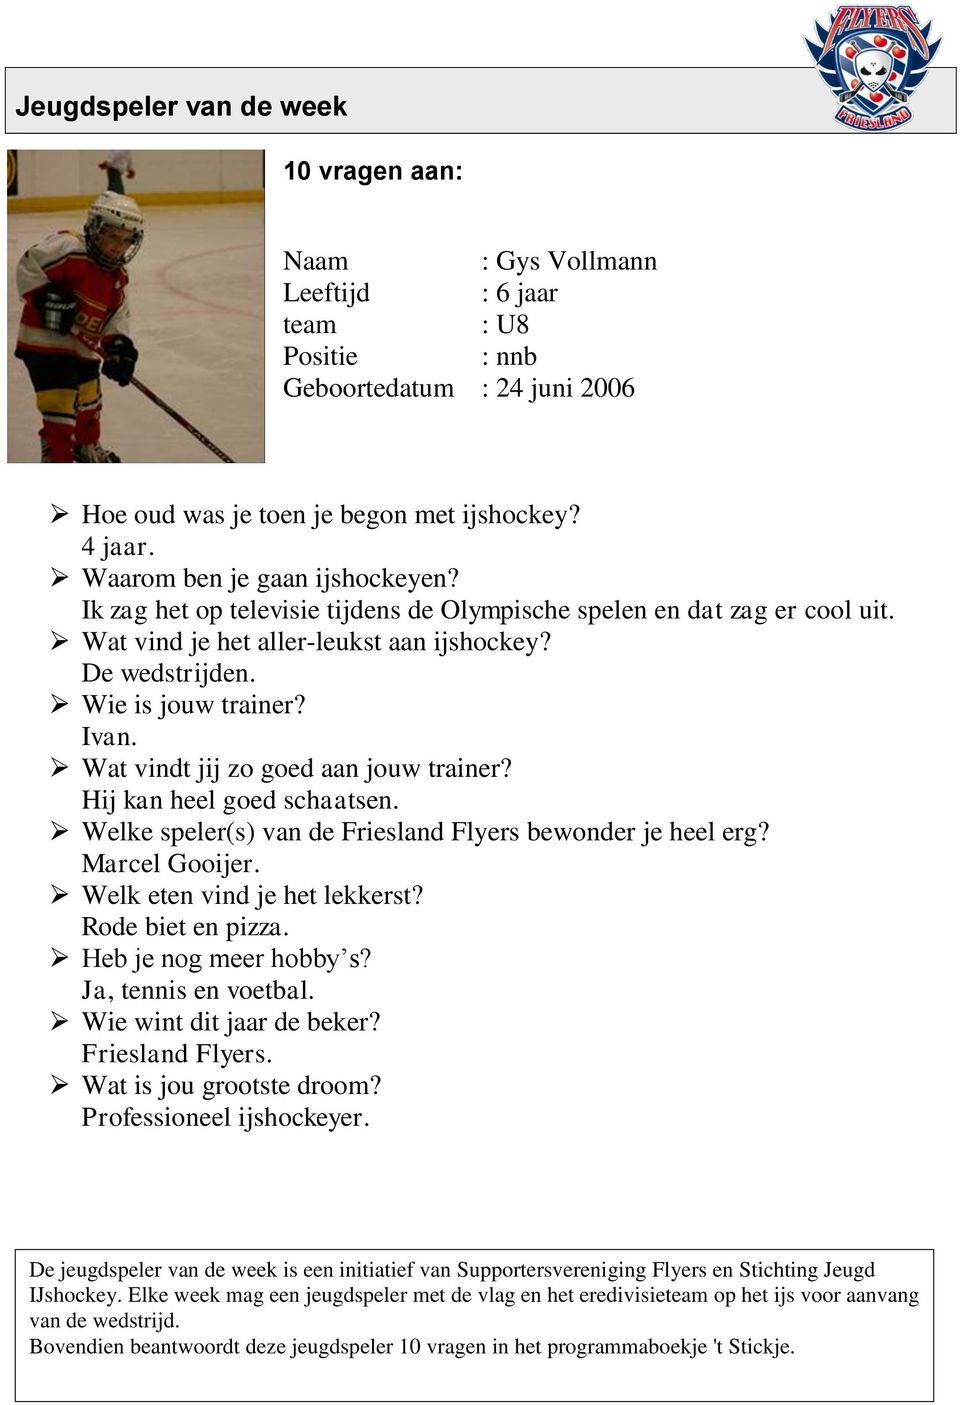 Wat vindt jij zo goed aan jouw trainer? Hij kan heel goed schaatsen. Welke speler(s) van de Friesland Flyers bewonder je heel erg? Marcel Gooijer. Welk eten vind je het lekkerst? Rode biet en pizza.